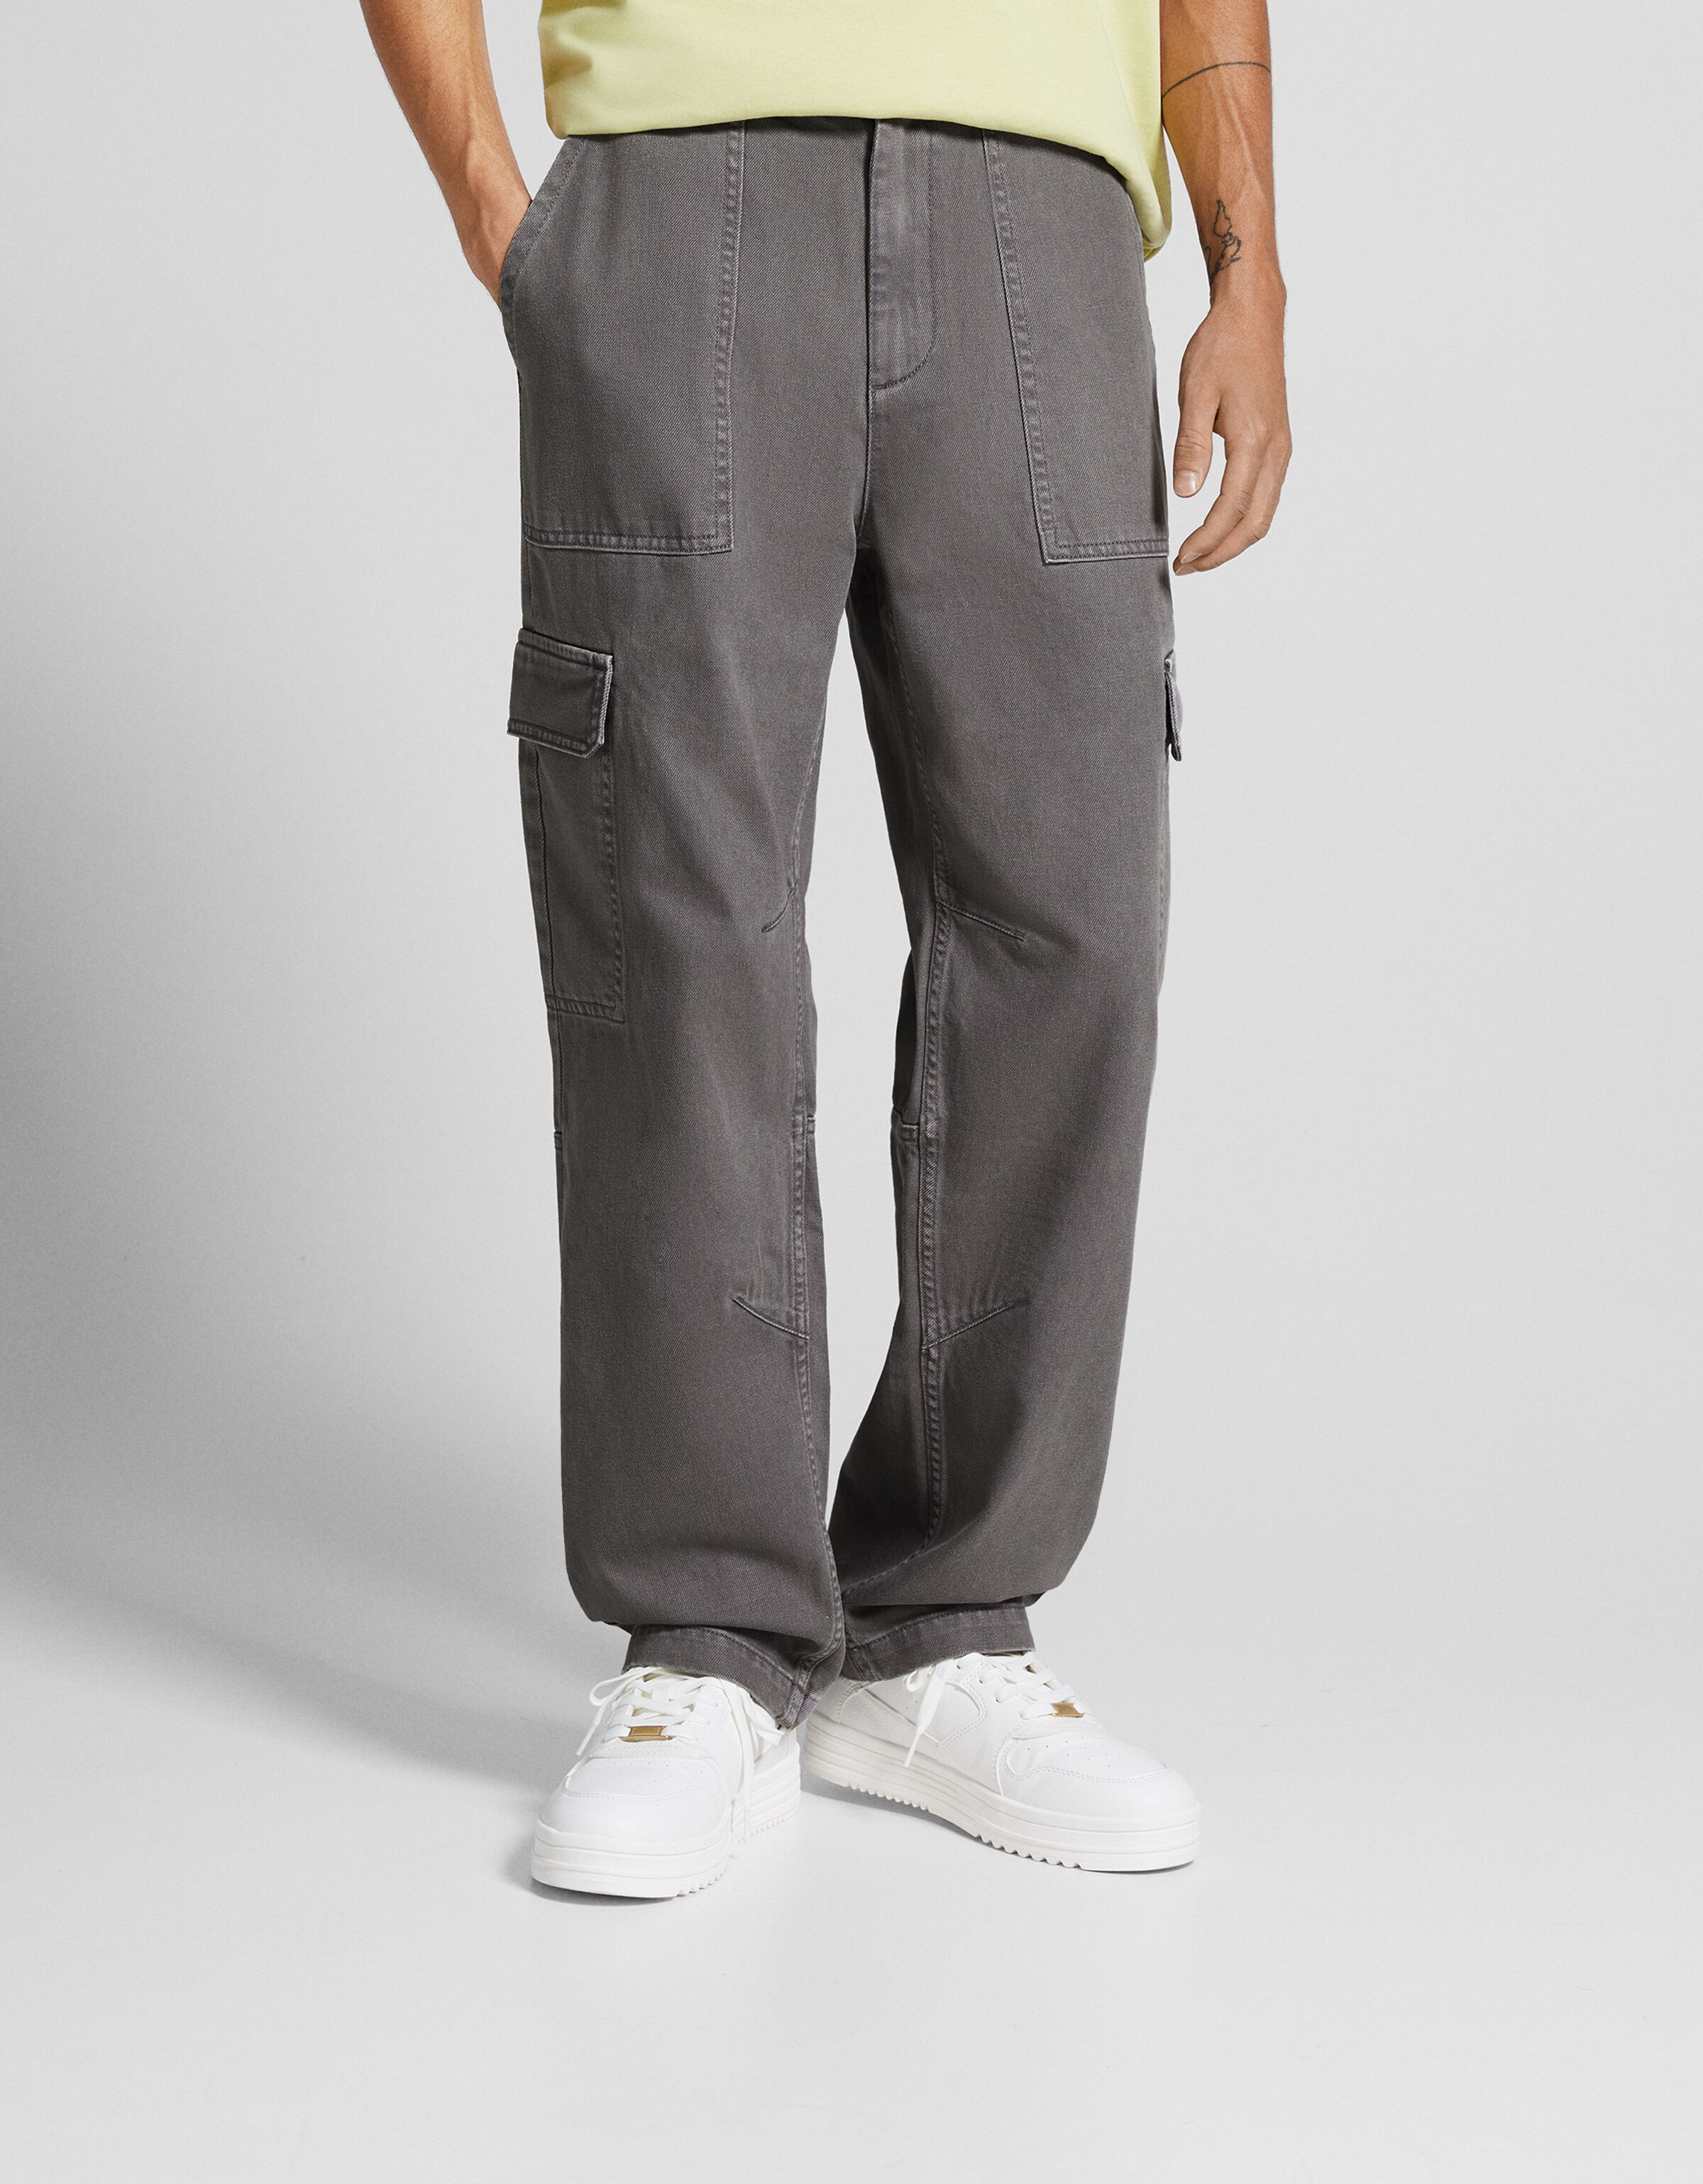 Trench - Men's Cargo Trousers - Grey – StewartsBallycastle